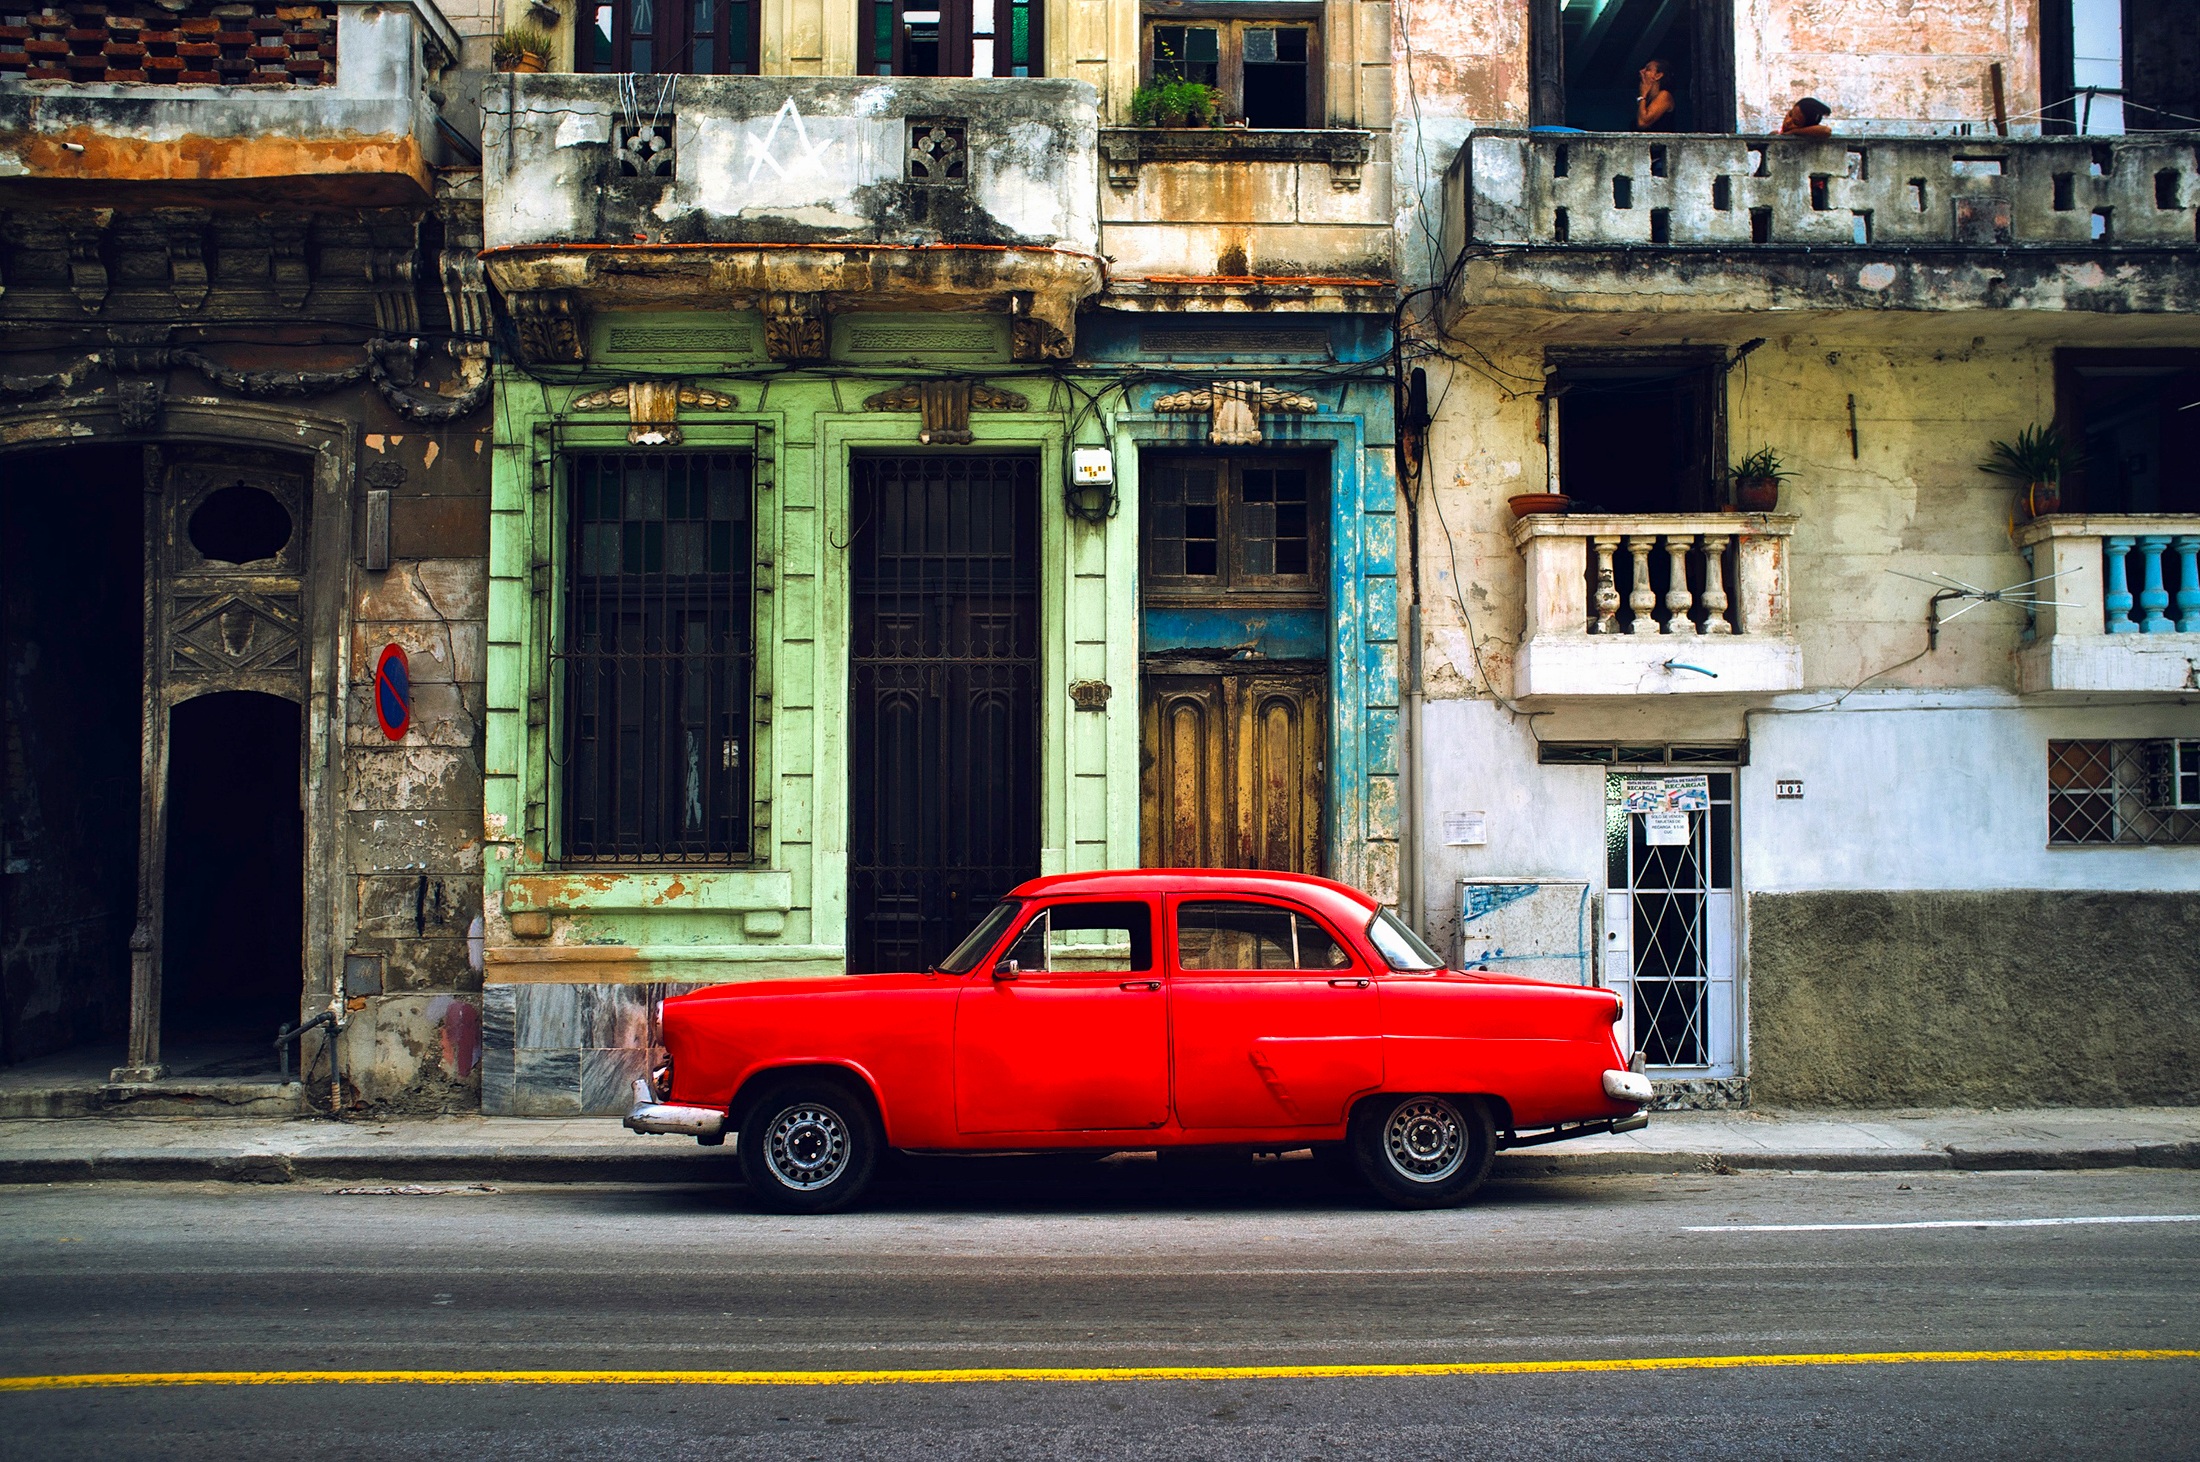 Caraïbes_Cuba_Pixabay copyright_ORIG_20170328 (10).jpg